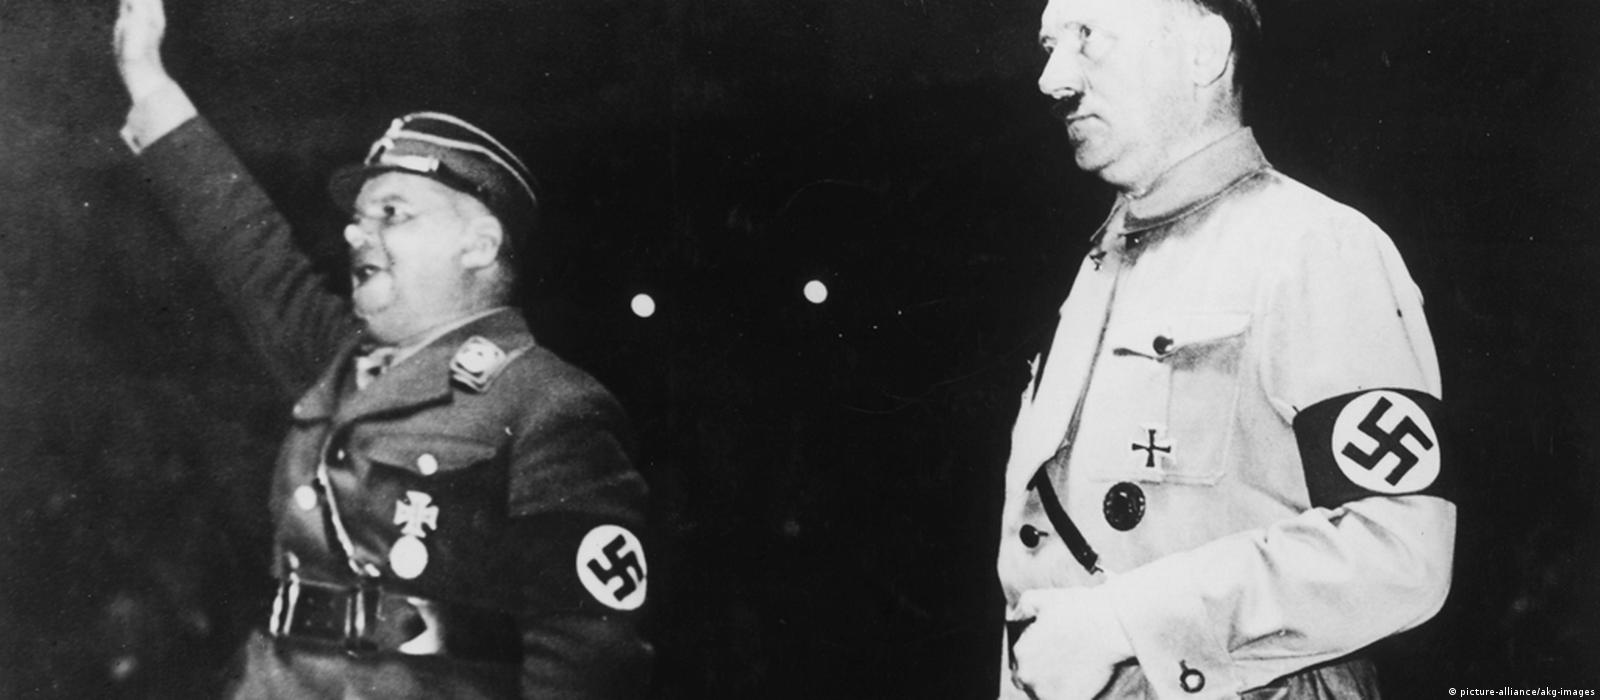 Röhm (az SA vezetője) és Hitler itt még együtt / Fotó: Dw.com